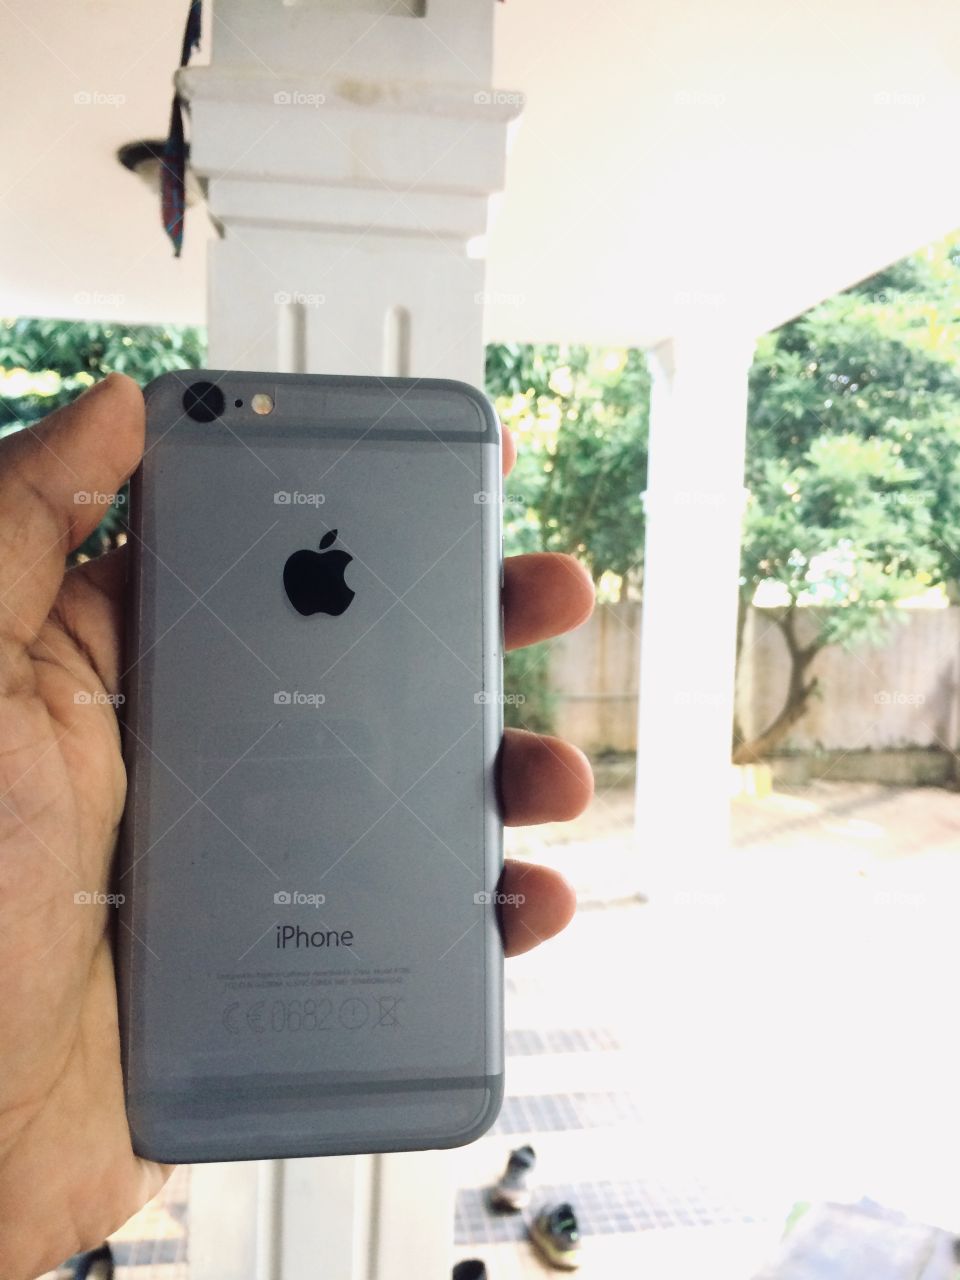 Photo of a iphone 6 in india,dubai